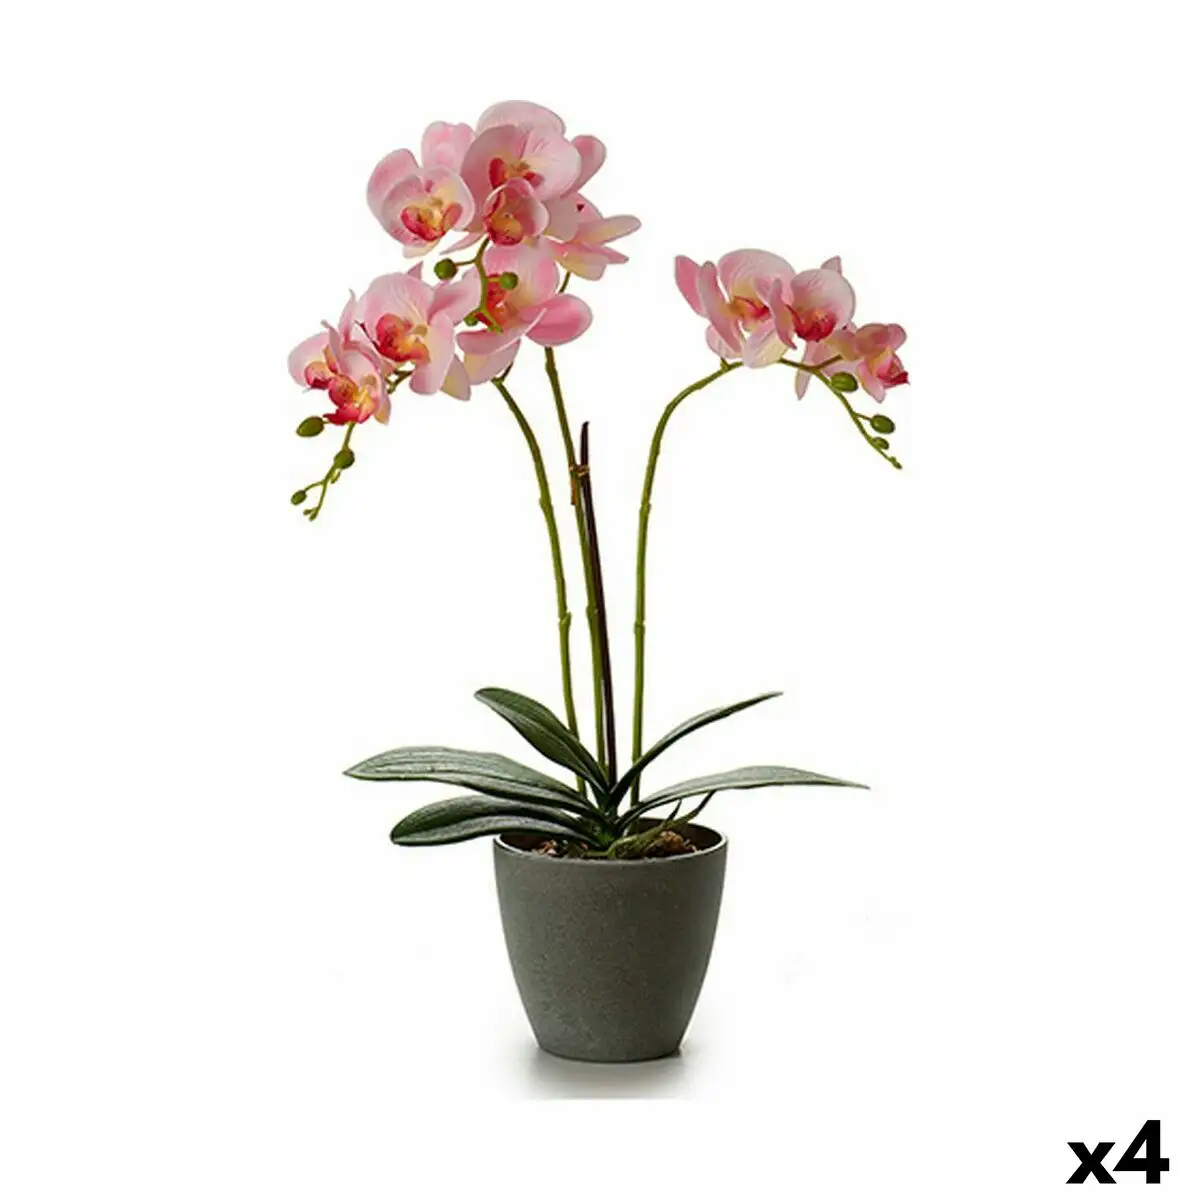 Plante decorative orchidee 19 x 48 x 24 cm plastique 4 unites _2505. DIAYTAR SENEGAL - Votre Destination Shopping d'Exception. Parcourez nos rayons virtuels et choisissez des produits qui incarnent l'excellence et la diversité.